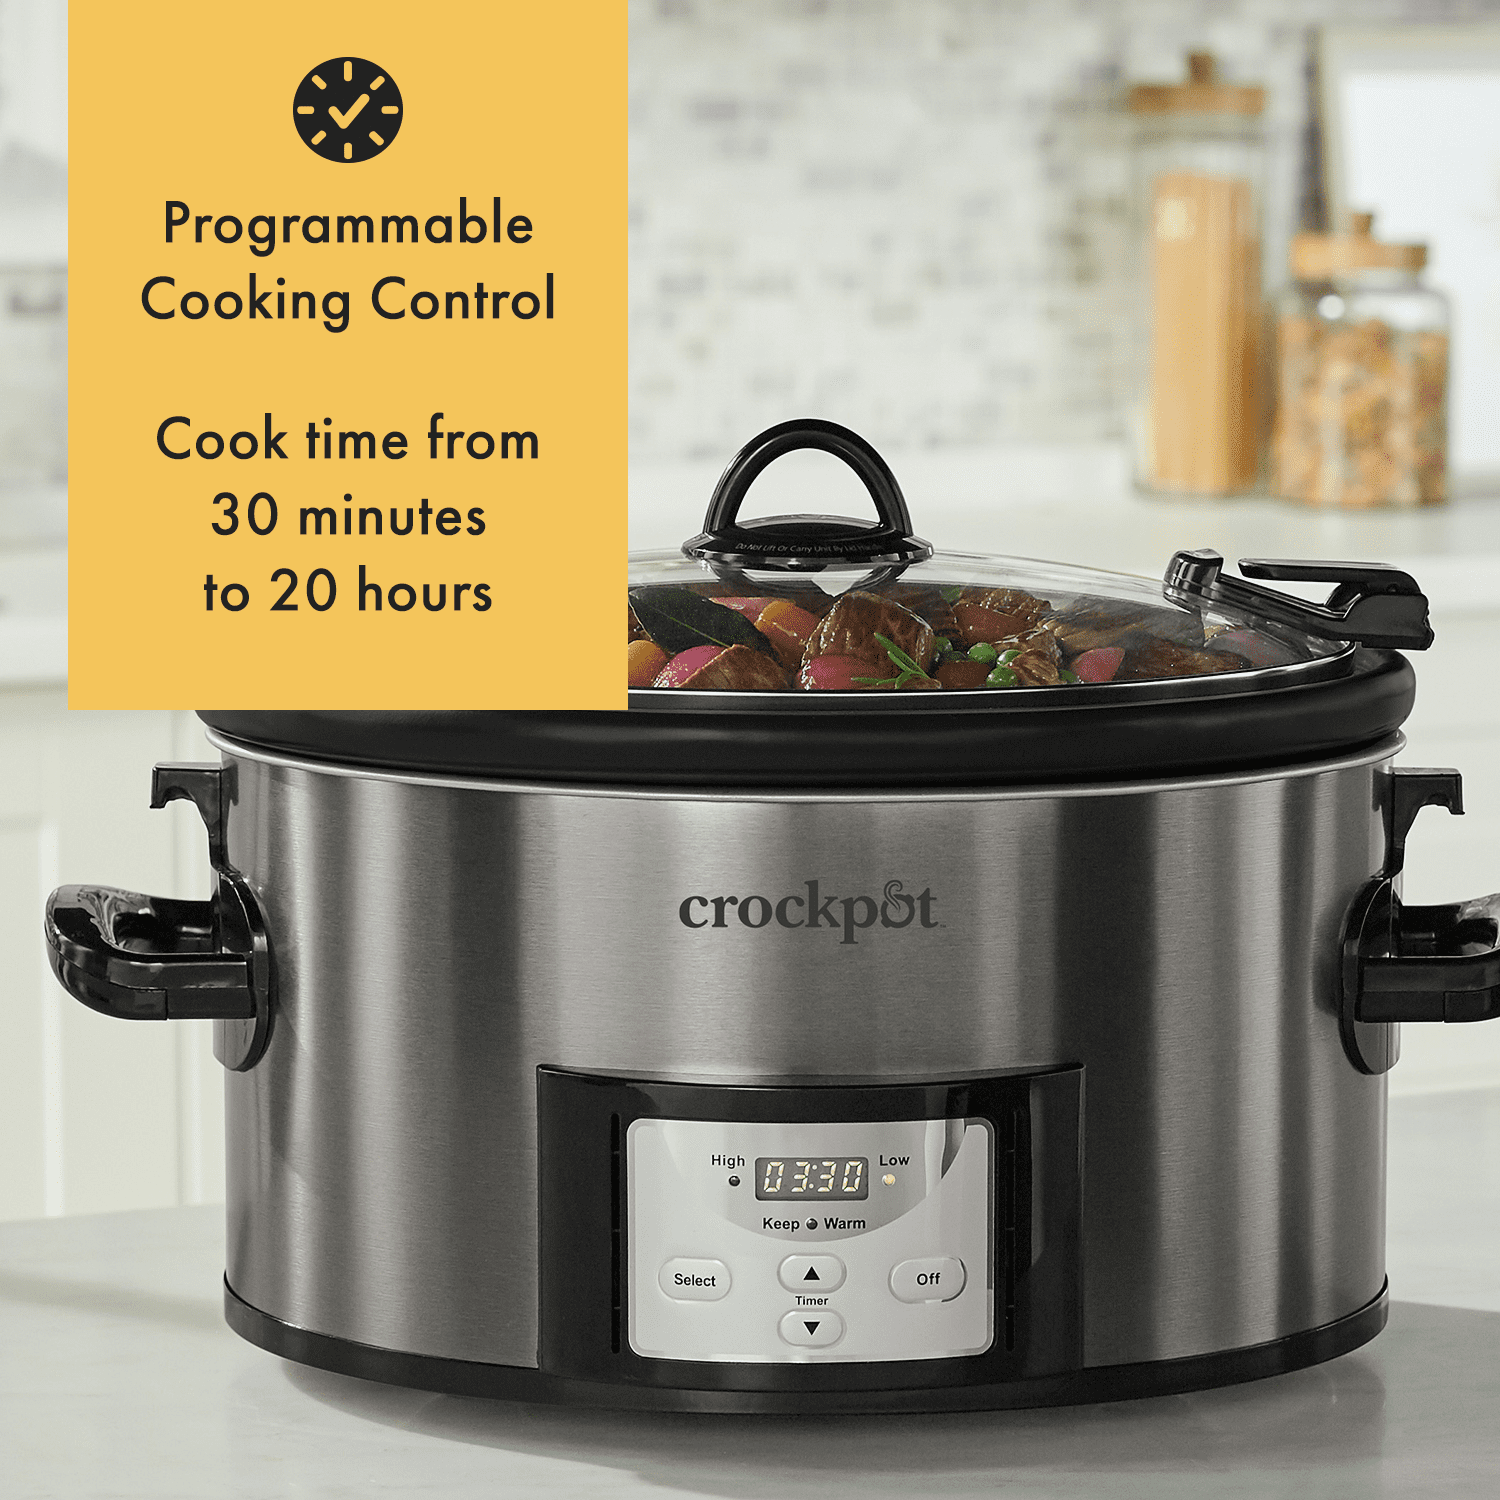 Enjoy roast & carrots w/ this 7-Qt. Crock-Pot slow cooker at just $20 (Reg.  $30)